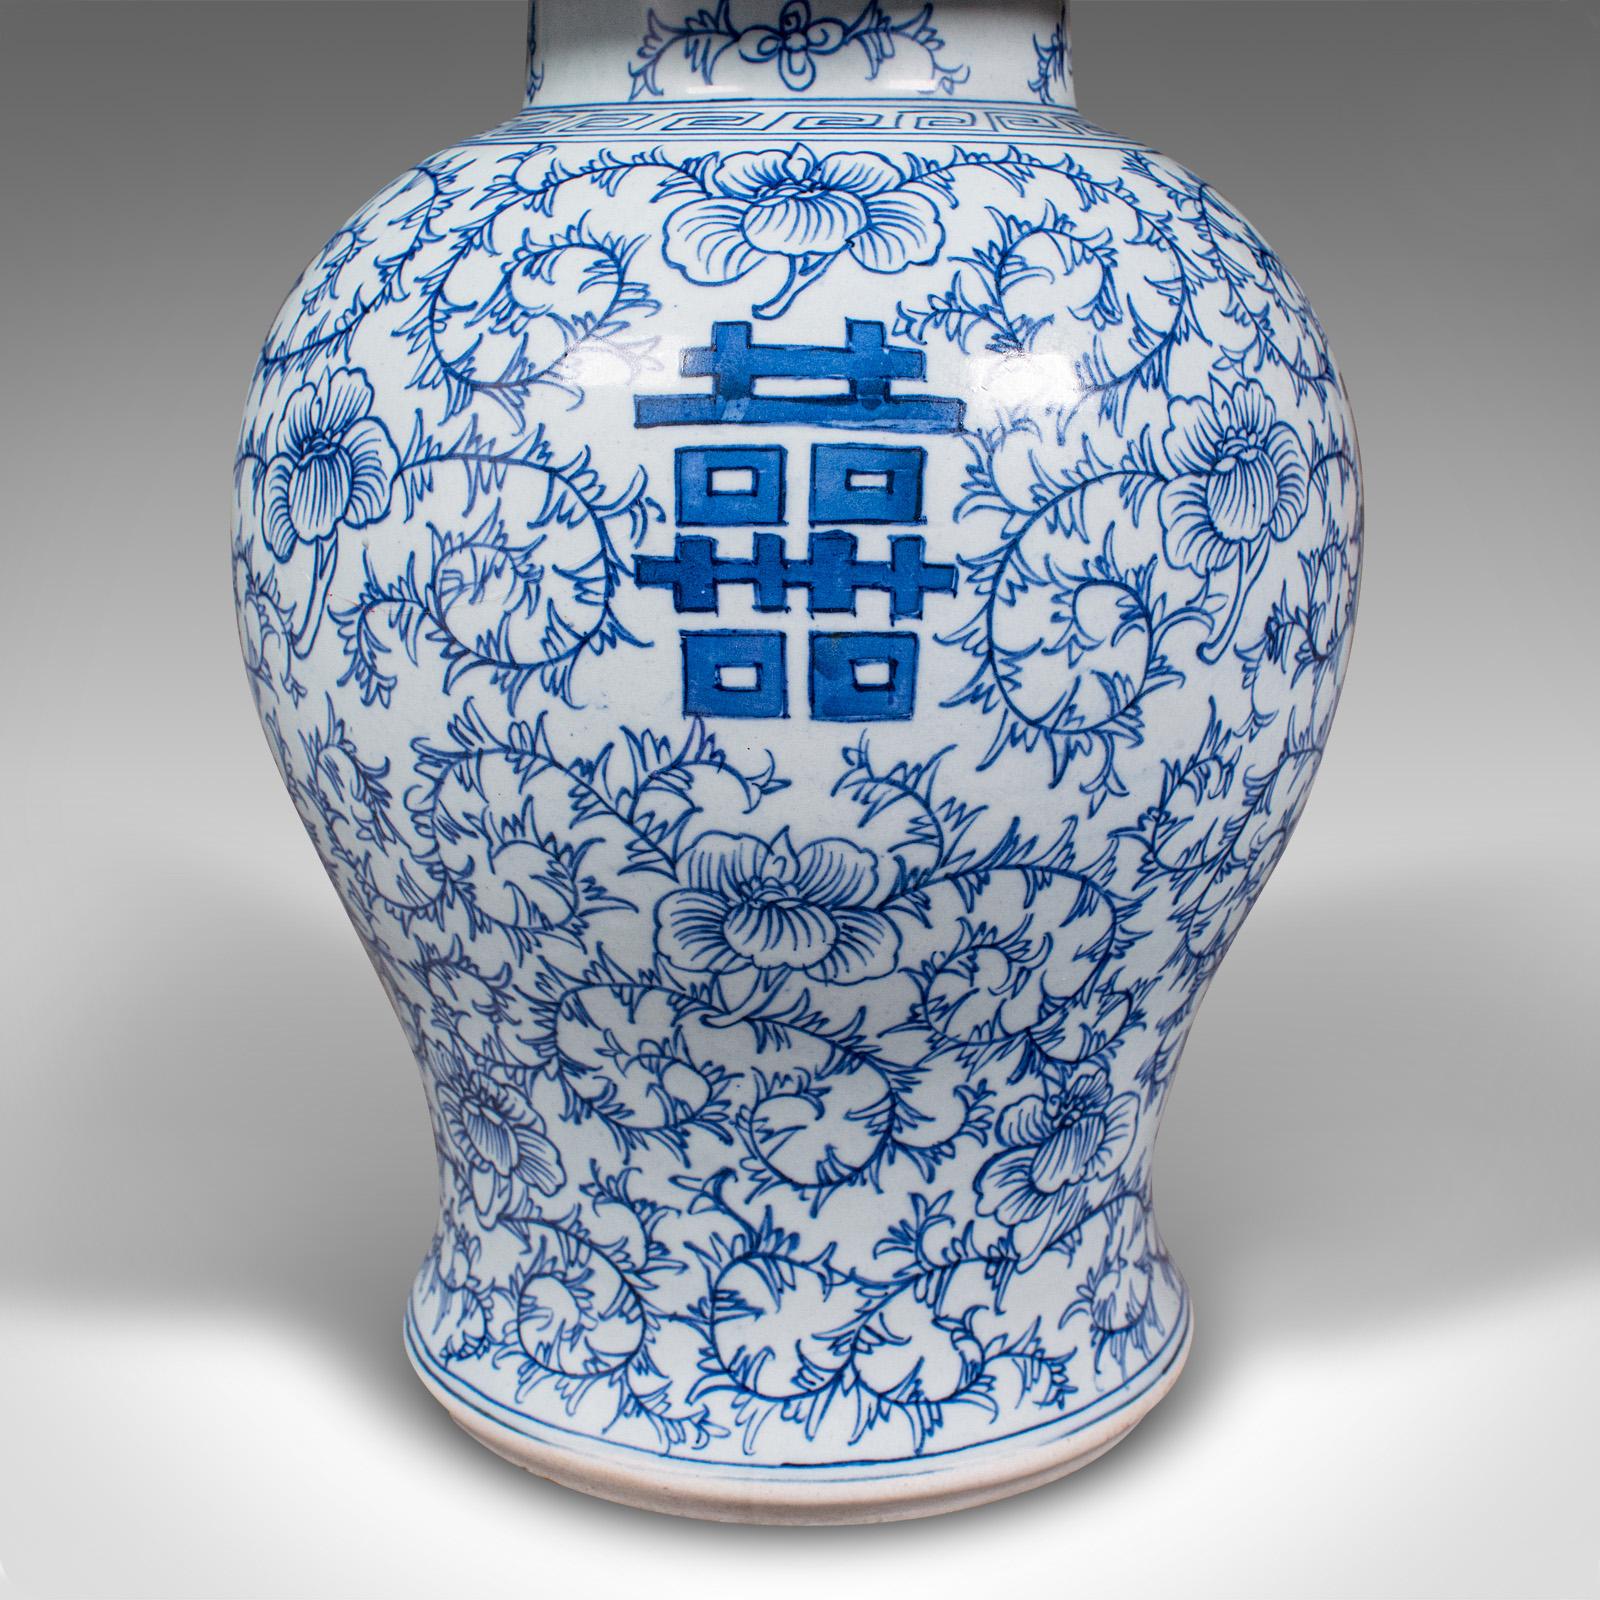 Vintage Decorative Flower Vase, Chinese, Ceramic, Urn, Spice Jar, Art Deco, 1930 For Sale 7